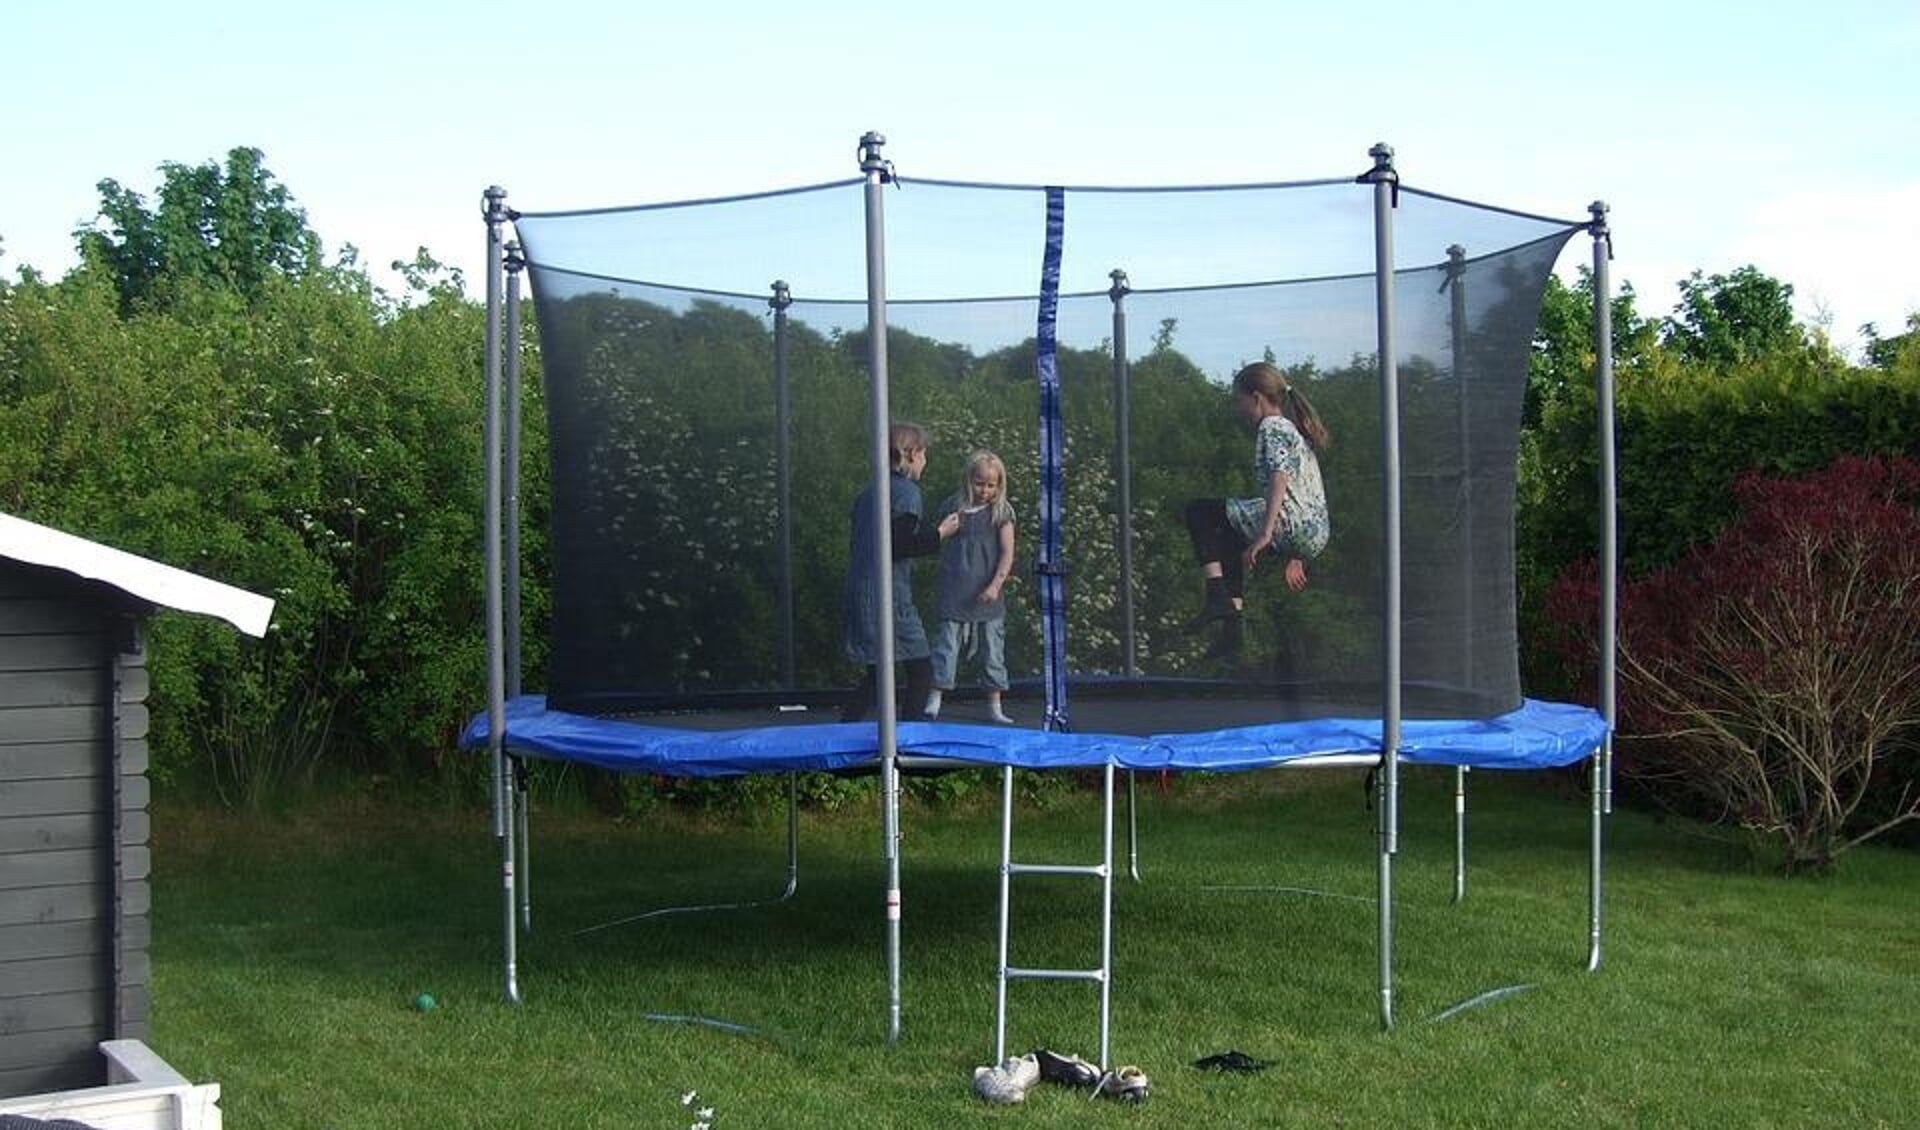 leveren Score toewijzing Populair in de gemiddelde Barneveldse tuin: een trampoline - Barneveldse  Krant | Nieuws uit de regio Barneveld